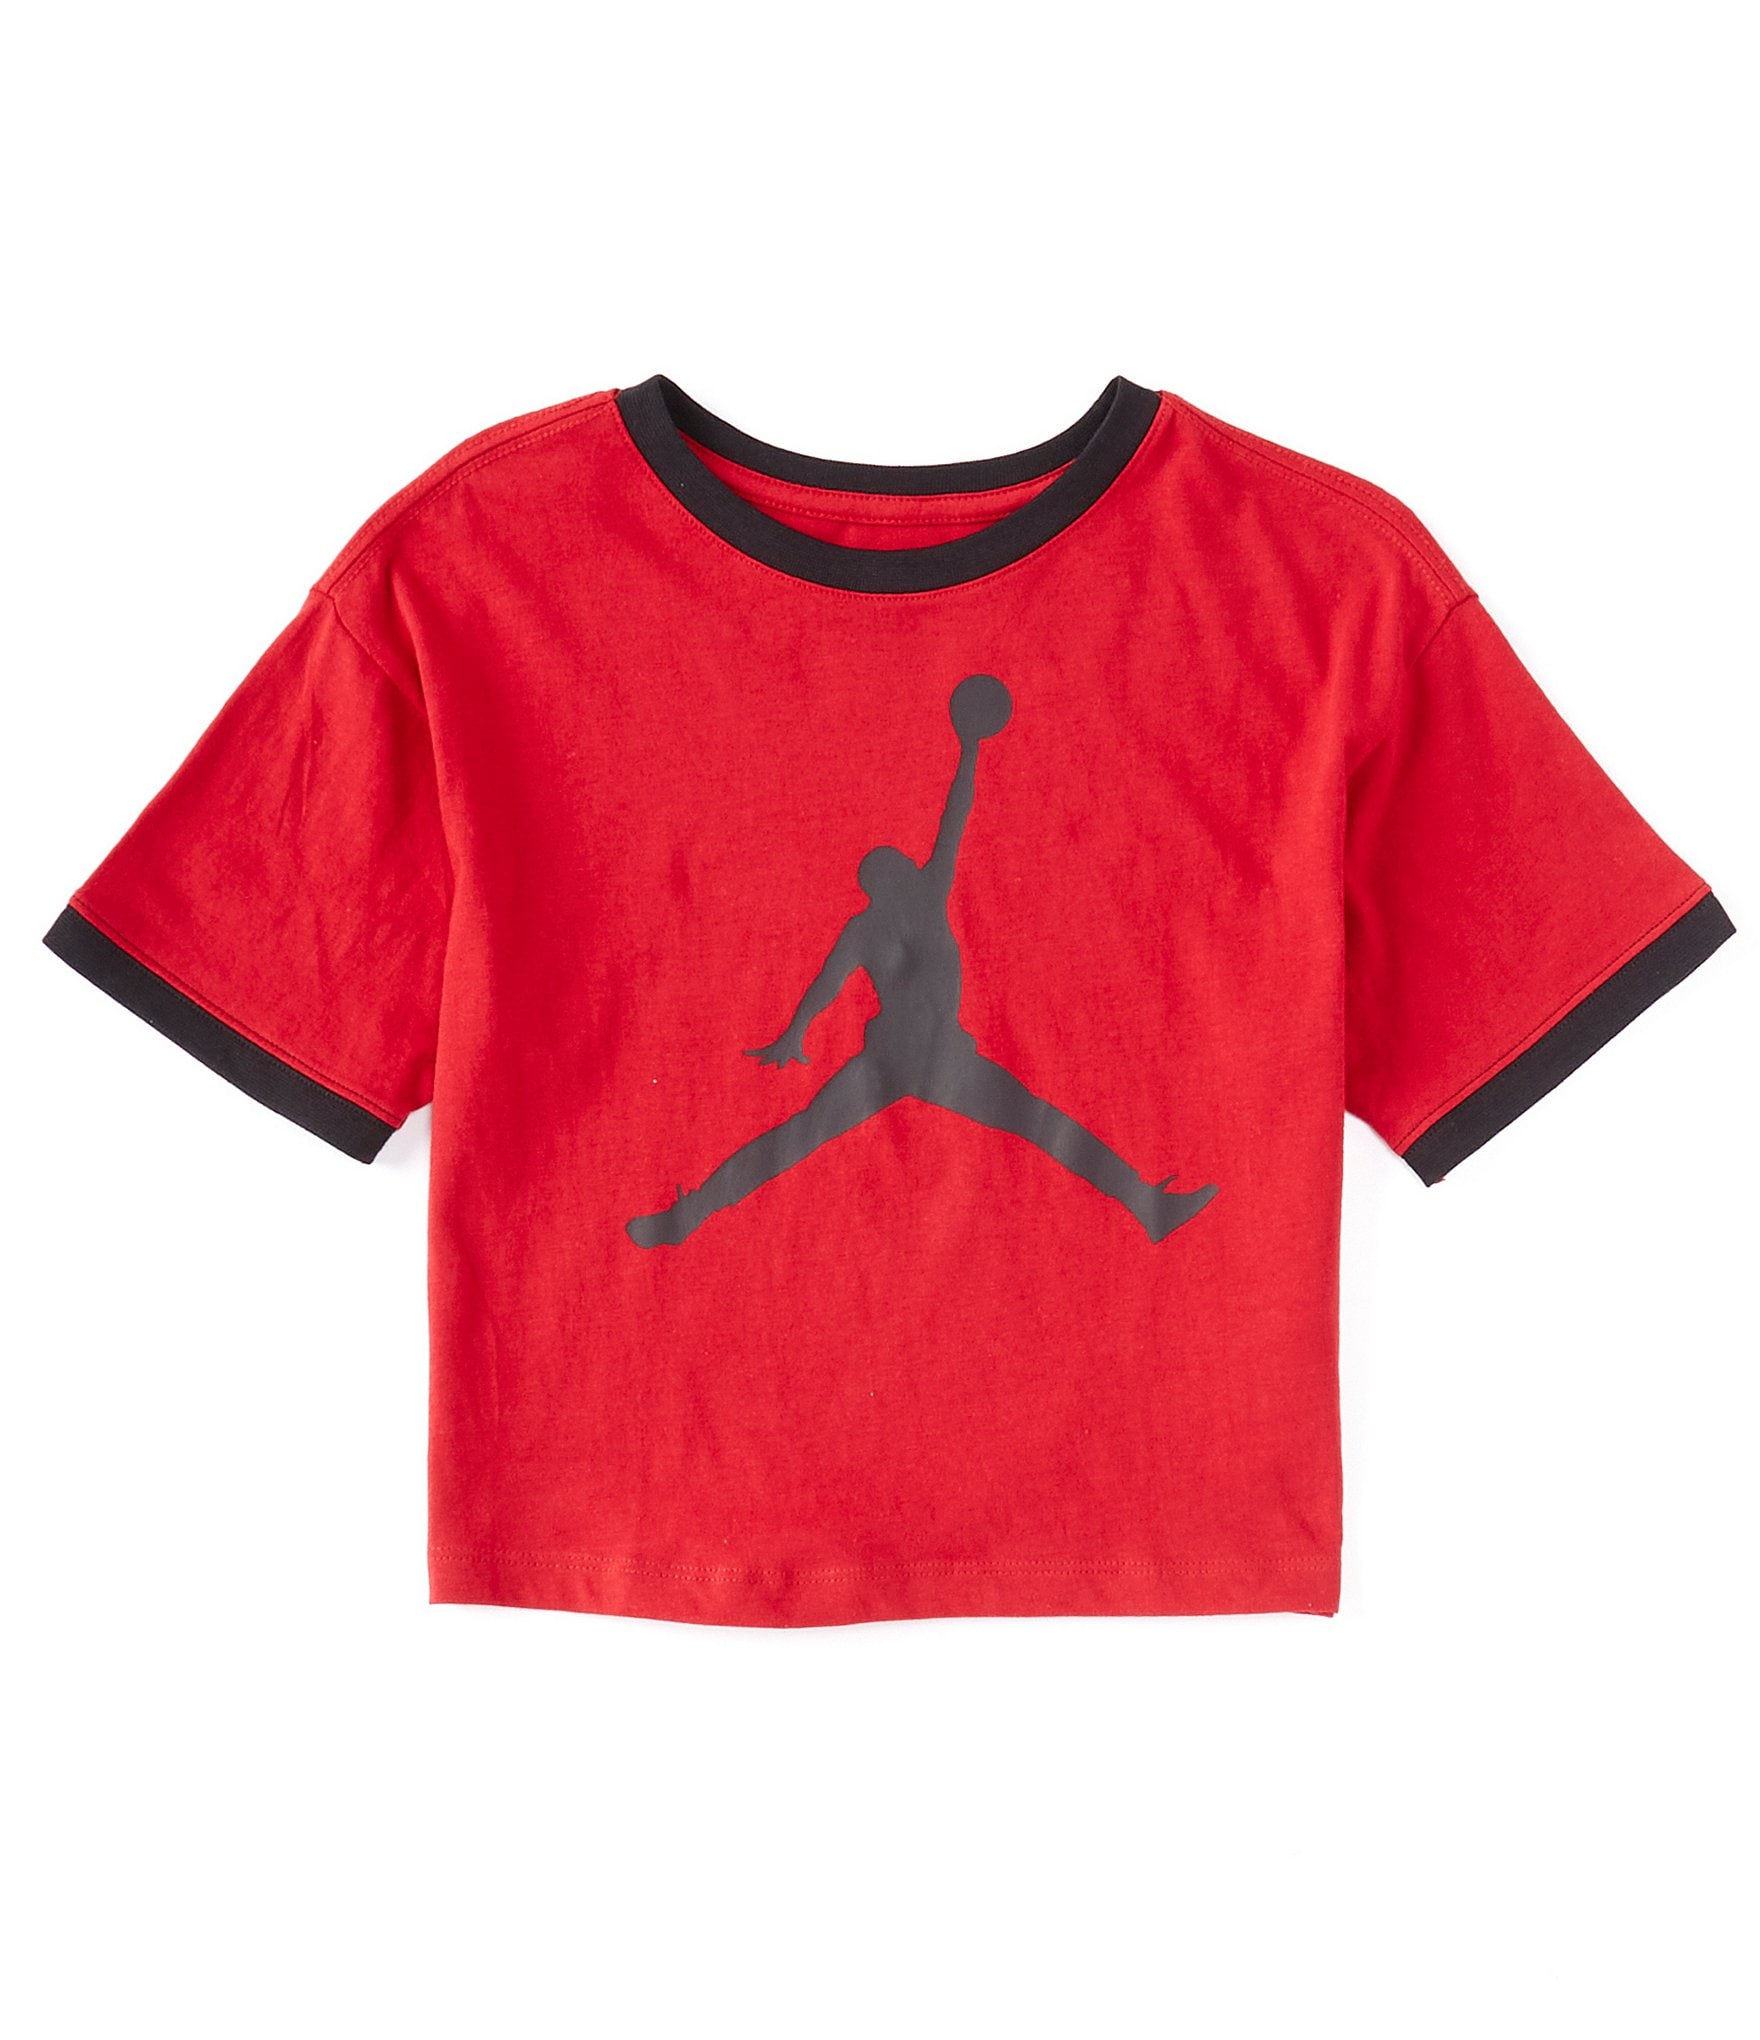 Kids Air Jordan T-shirt Black Red